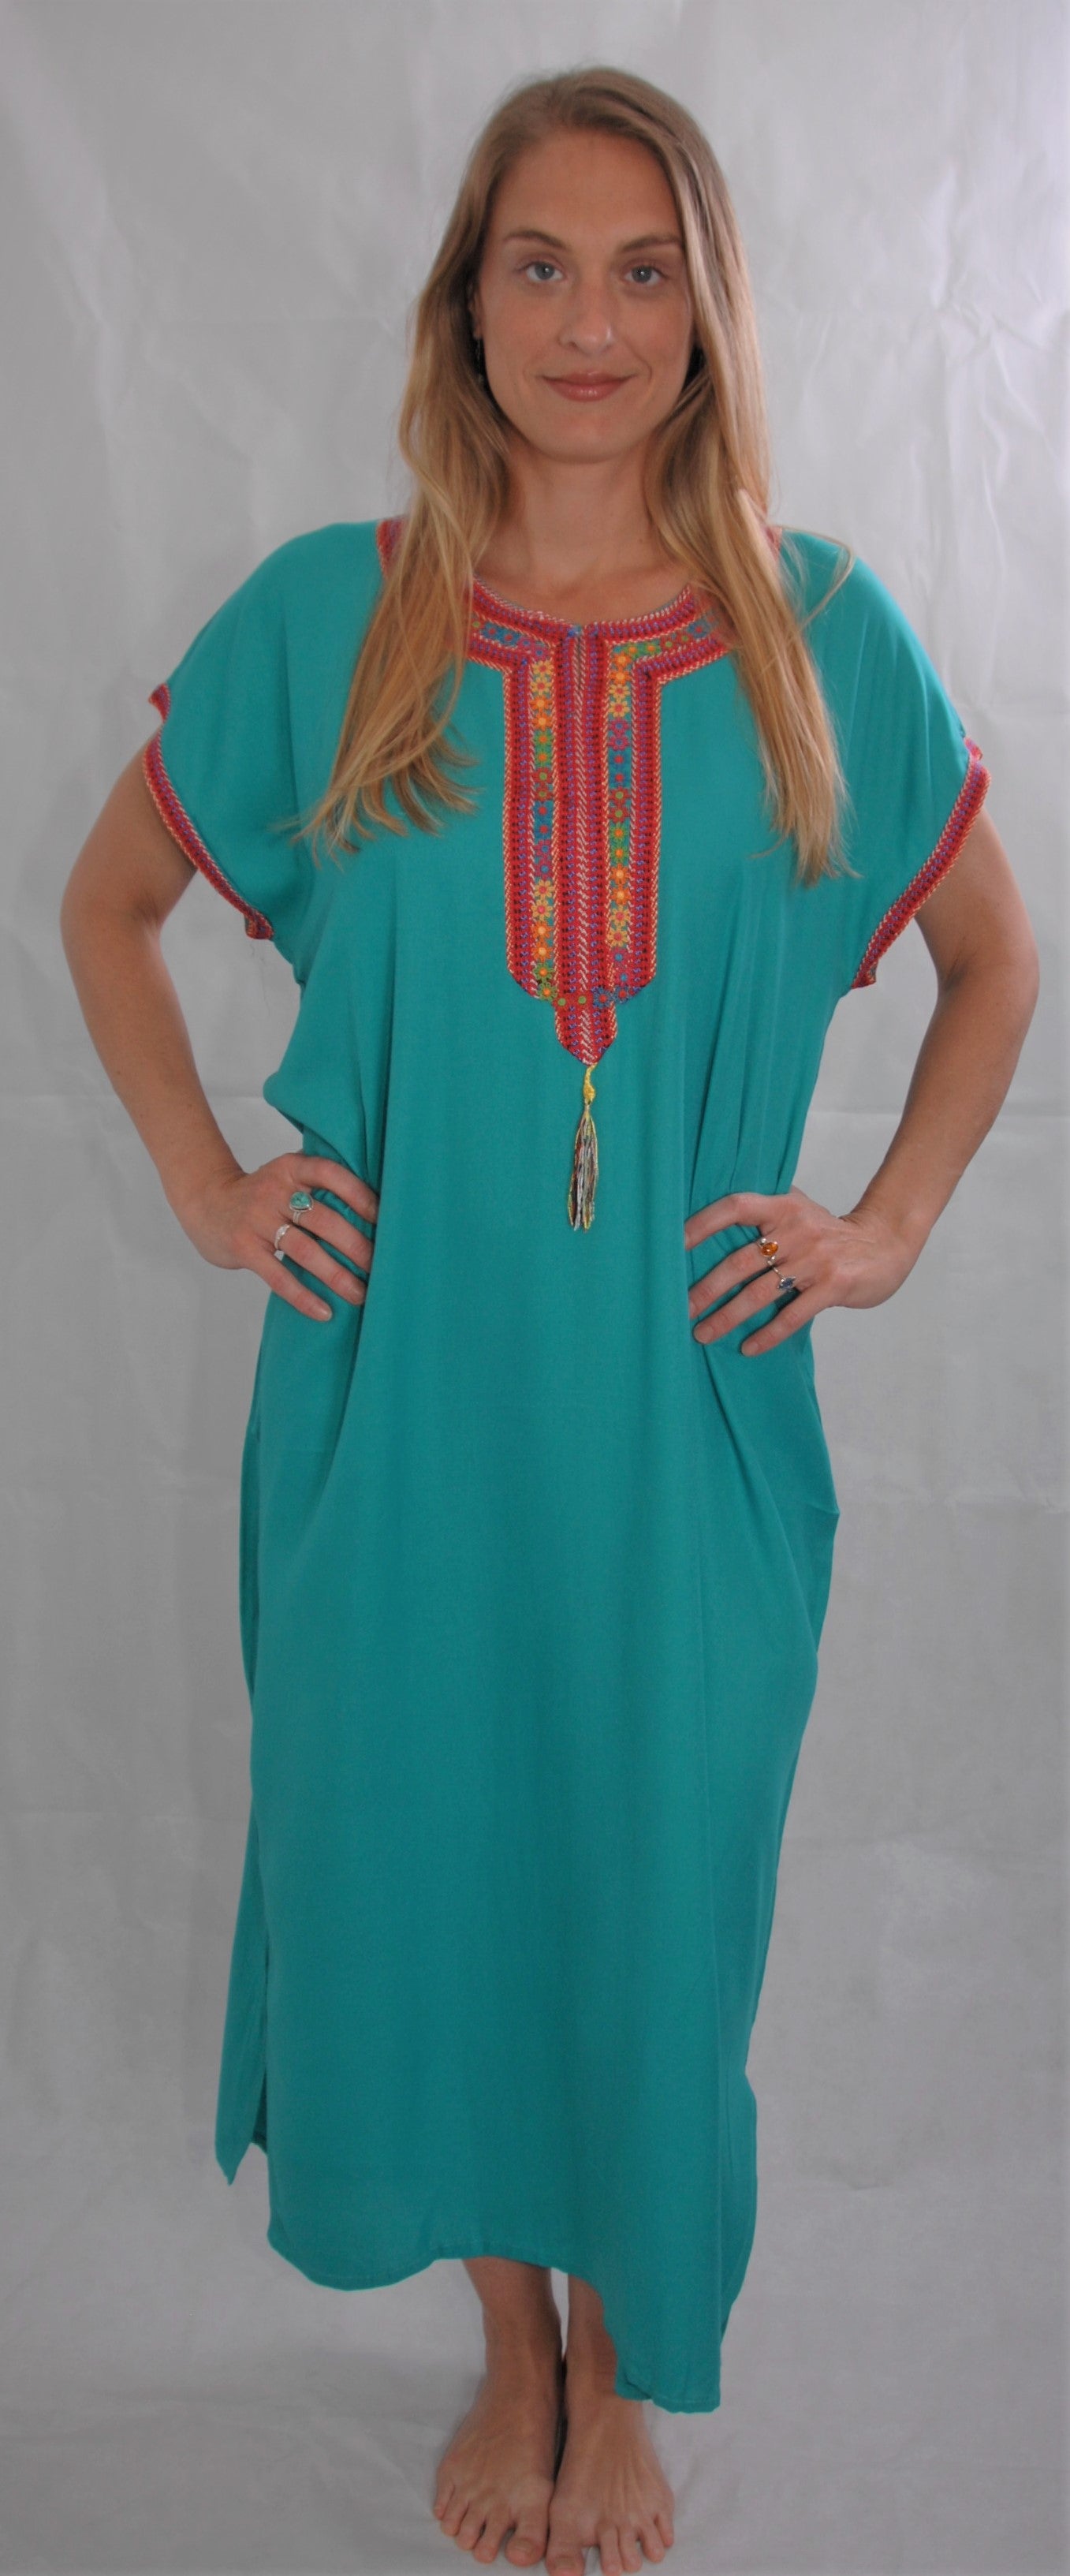 Gondura marocaine - turquoise - taille en dessous